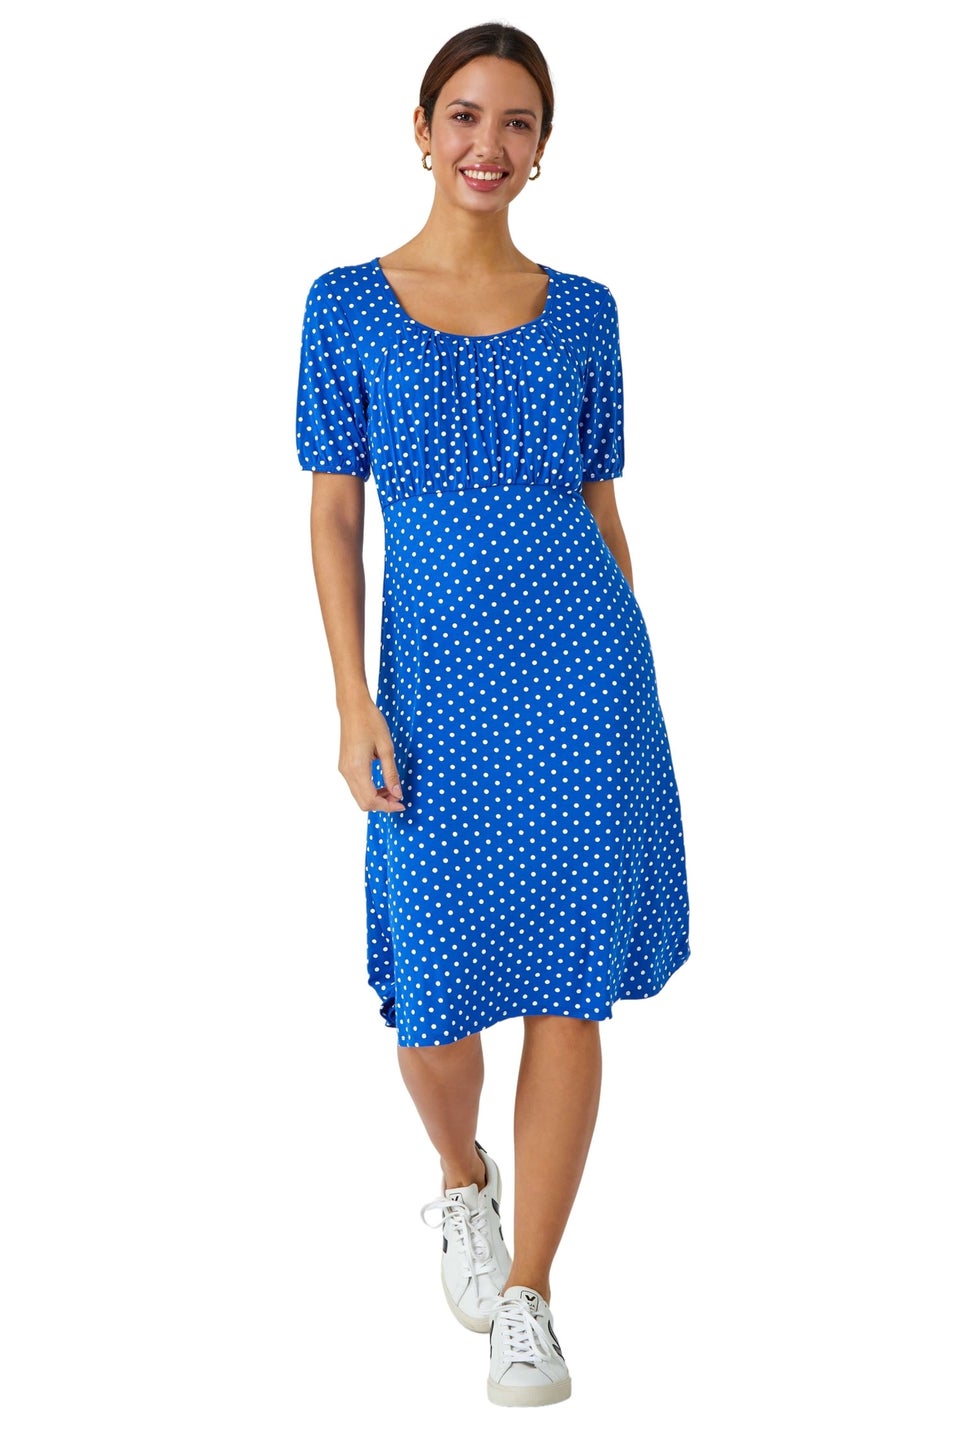 Roman Royal Blue Polka Dot Print Stretch Dress